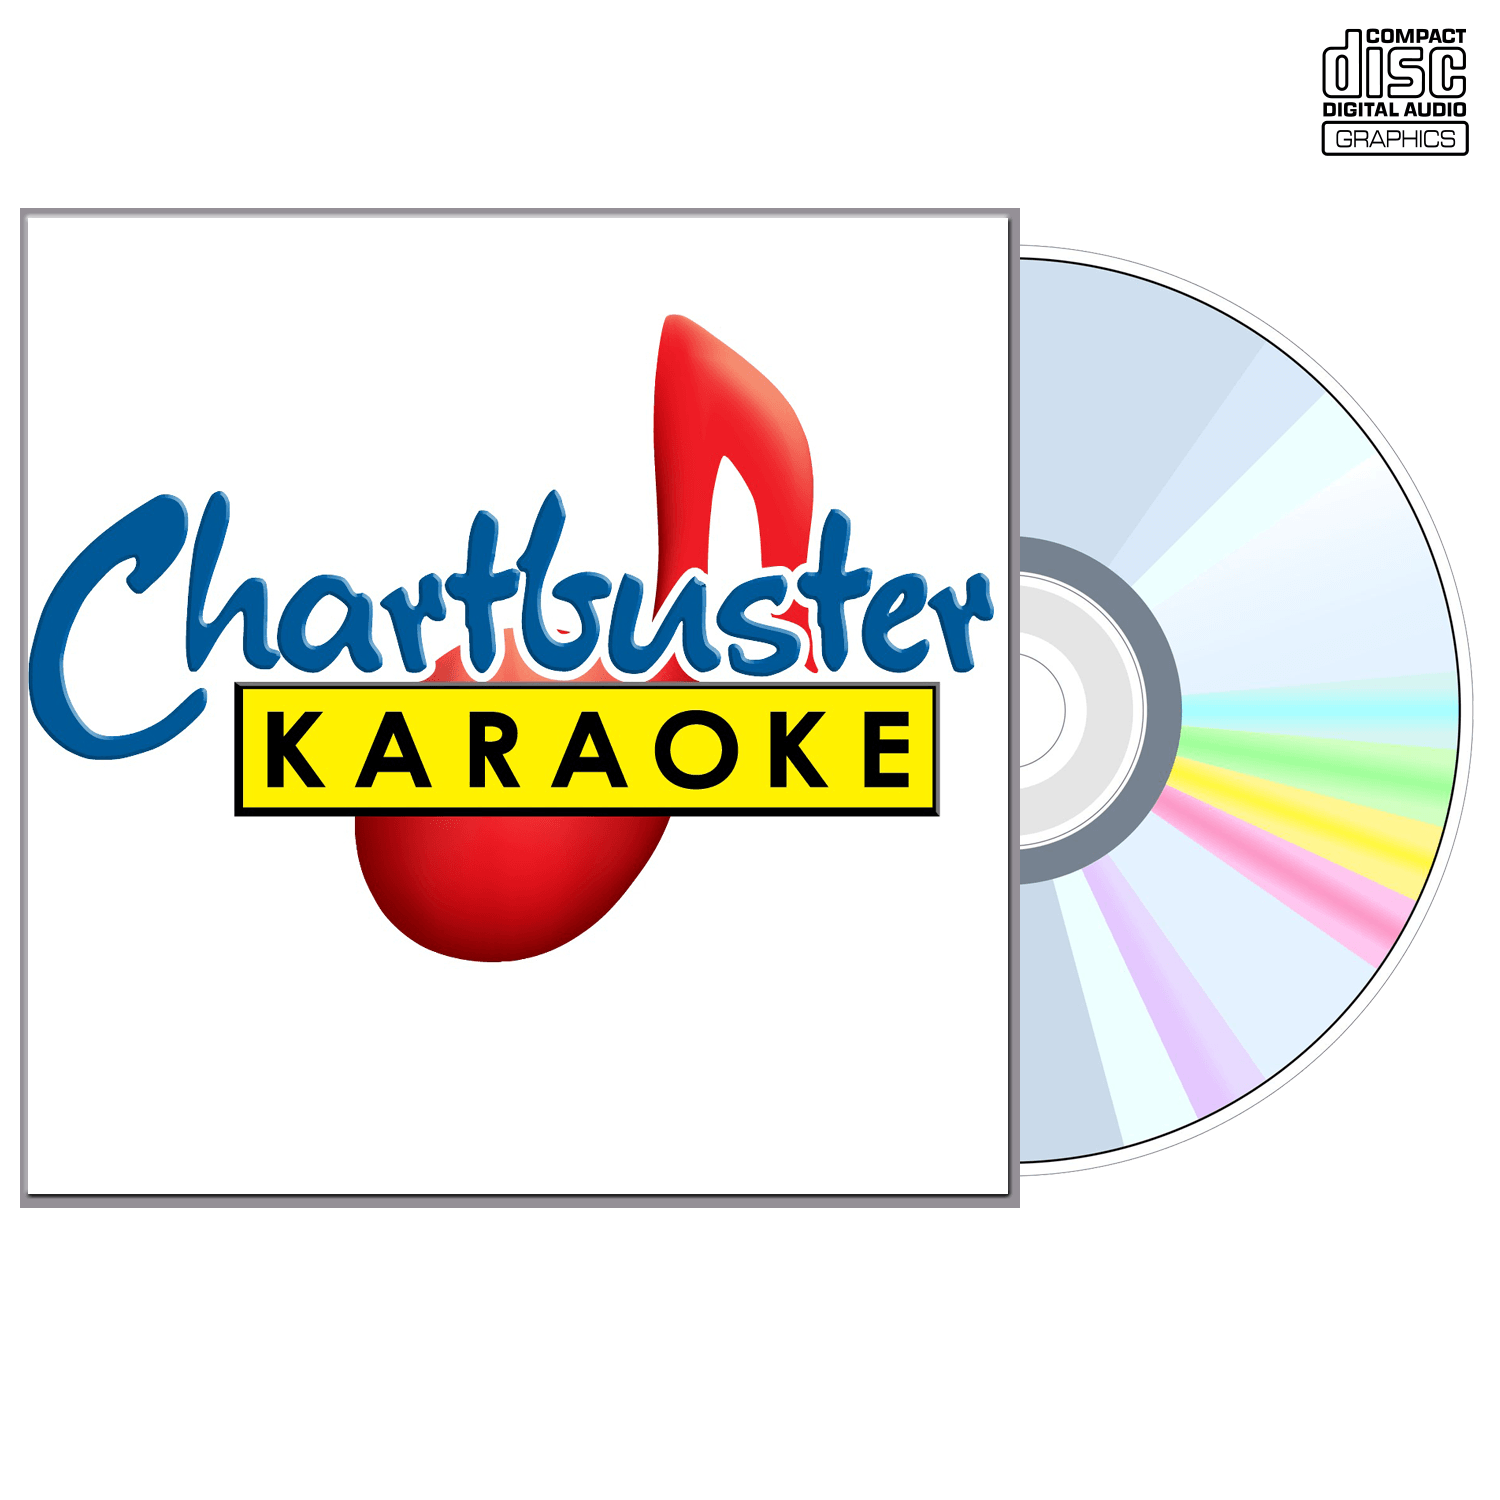 Ashton Shepherd - CD+G - Chartbuster Karaoke - Karaoke Home Entertainment